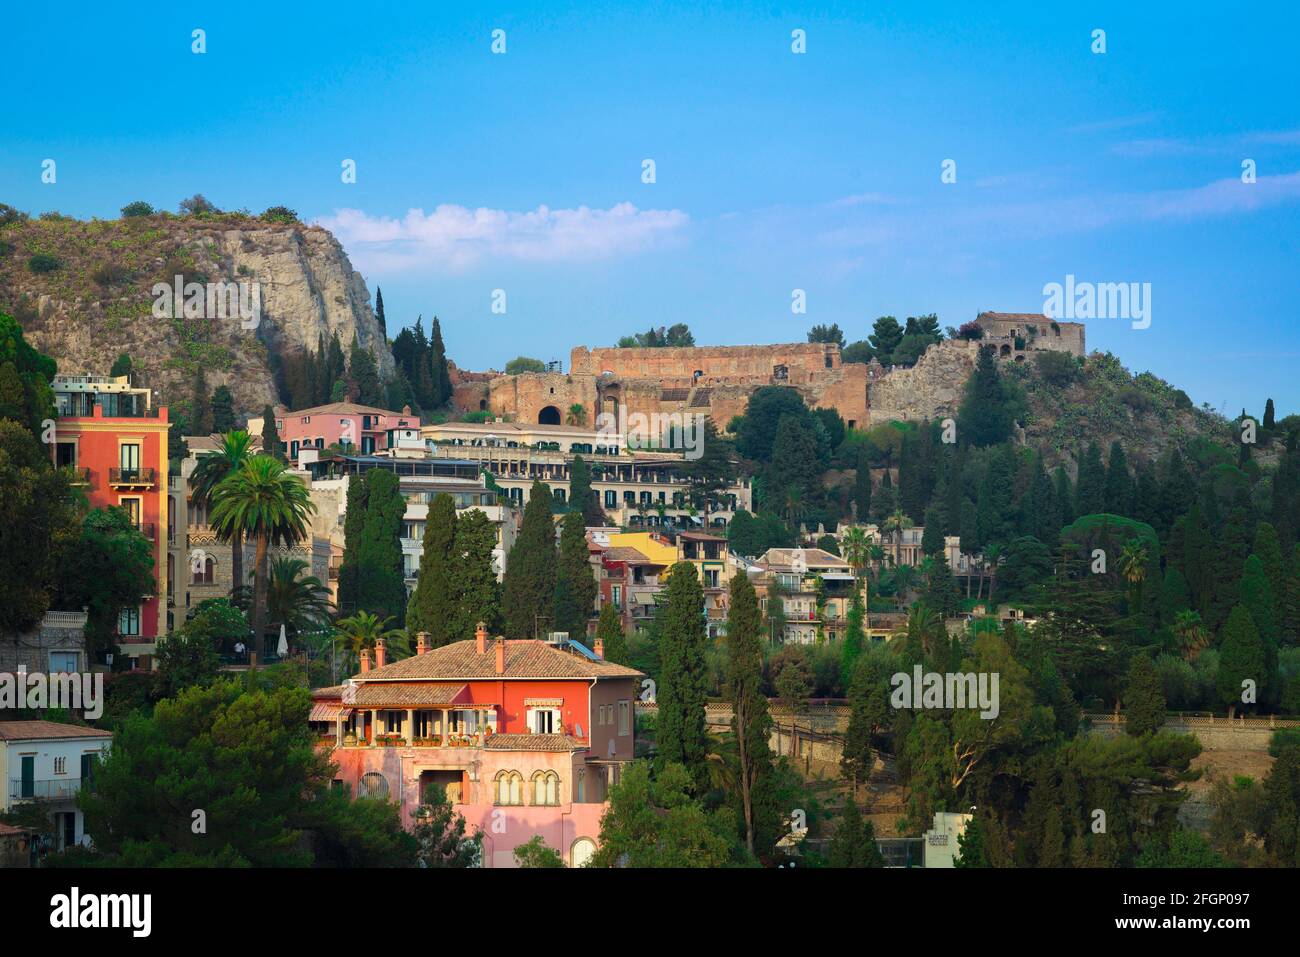 Sicile, vue au crépuscule de l'emplacement de colline de Taormina avec l'ancien théâtre grec situé au-dessus de la ville sur la ligne d'horizon, la Sicile. Banque D'Images